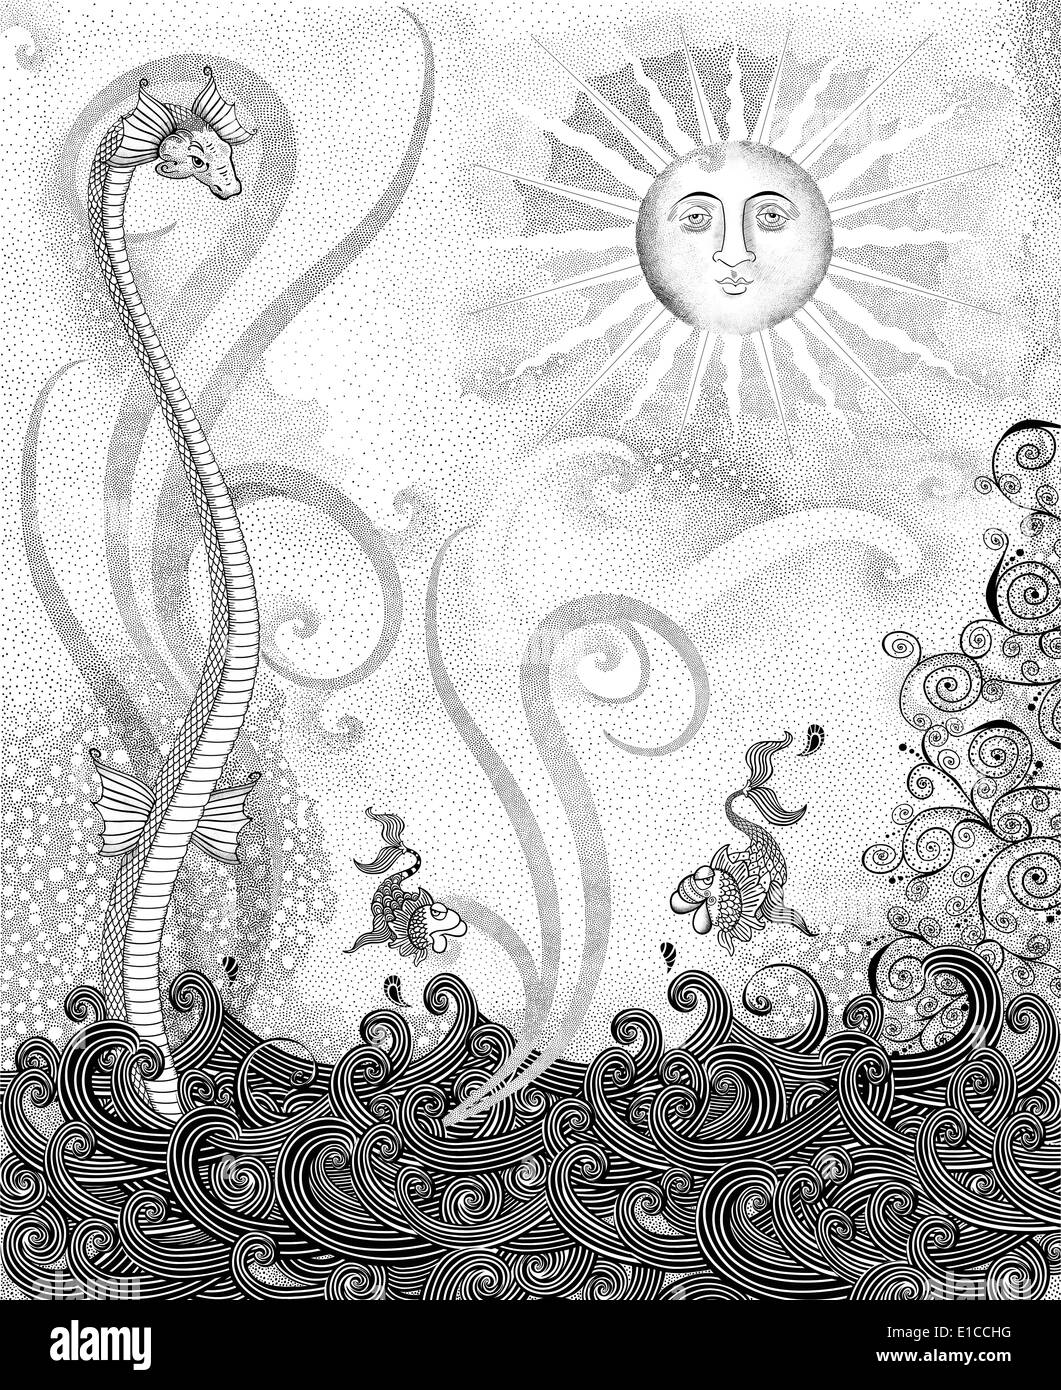 Fantasie-Tusche-Zeichnung von Meerestieren und ein Sonnengesicht Stockfoto